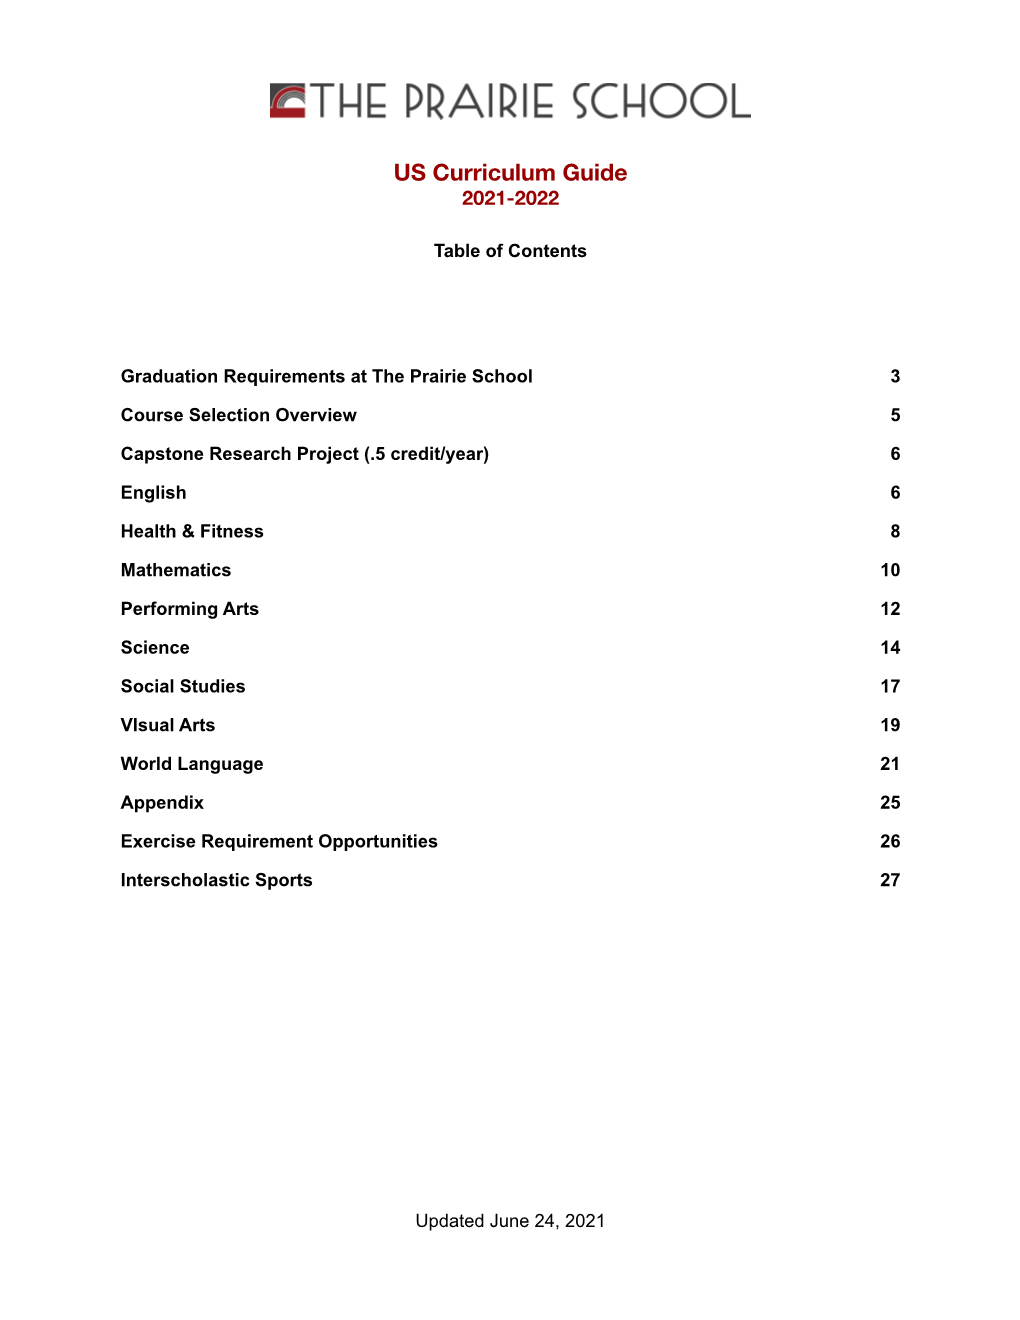 US Curriculum Guide 2021-2022